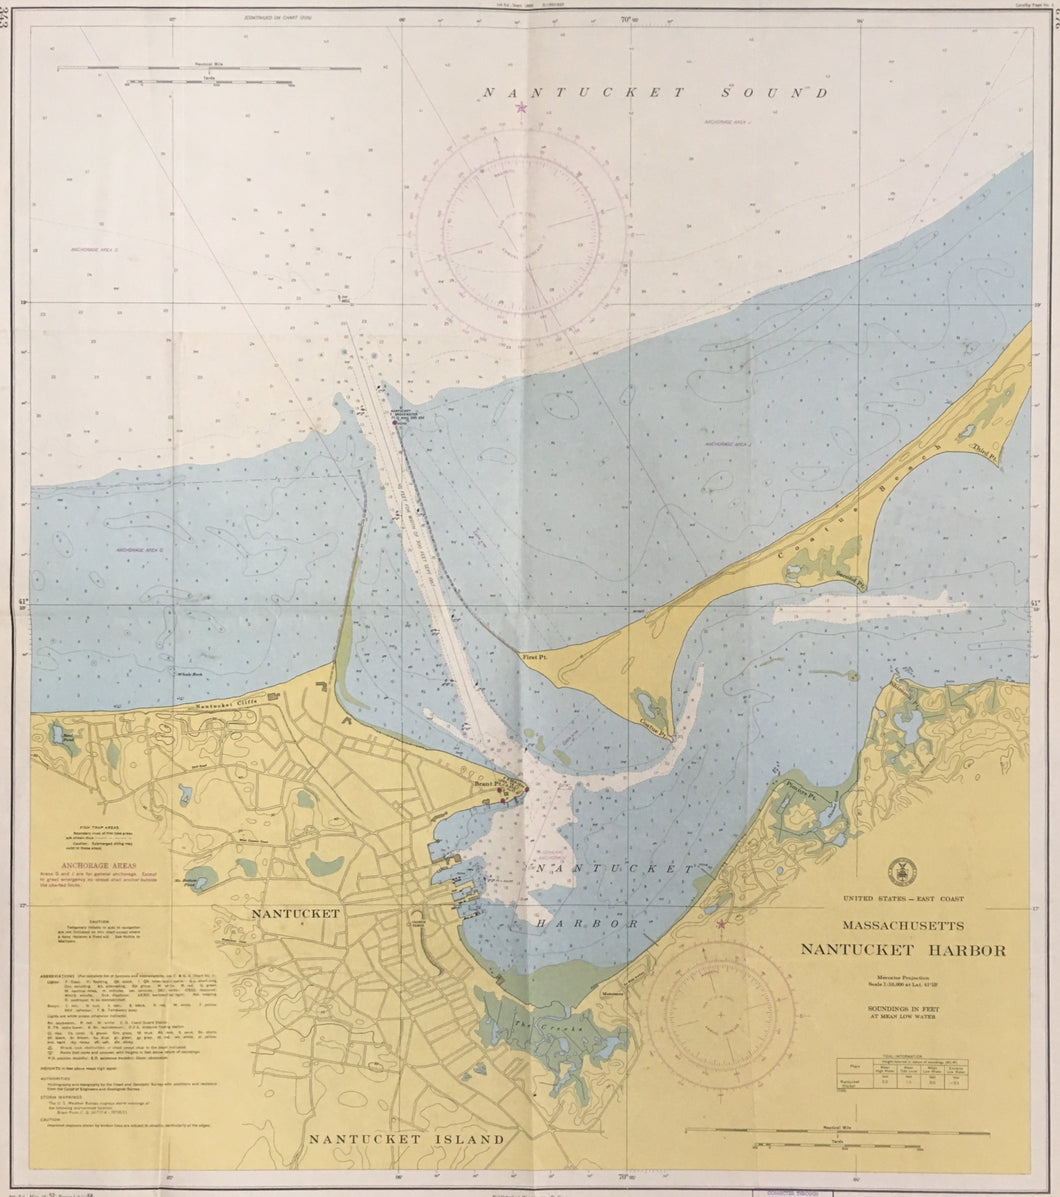 United States Coast Survey “Nantucket Harbor”